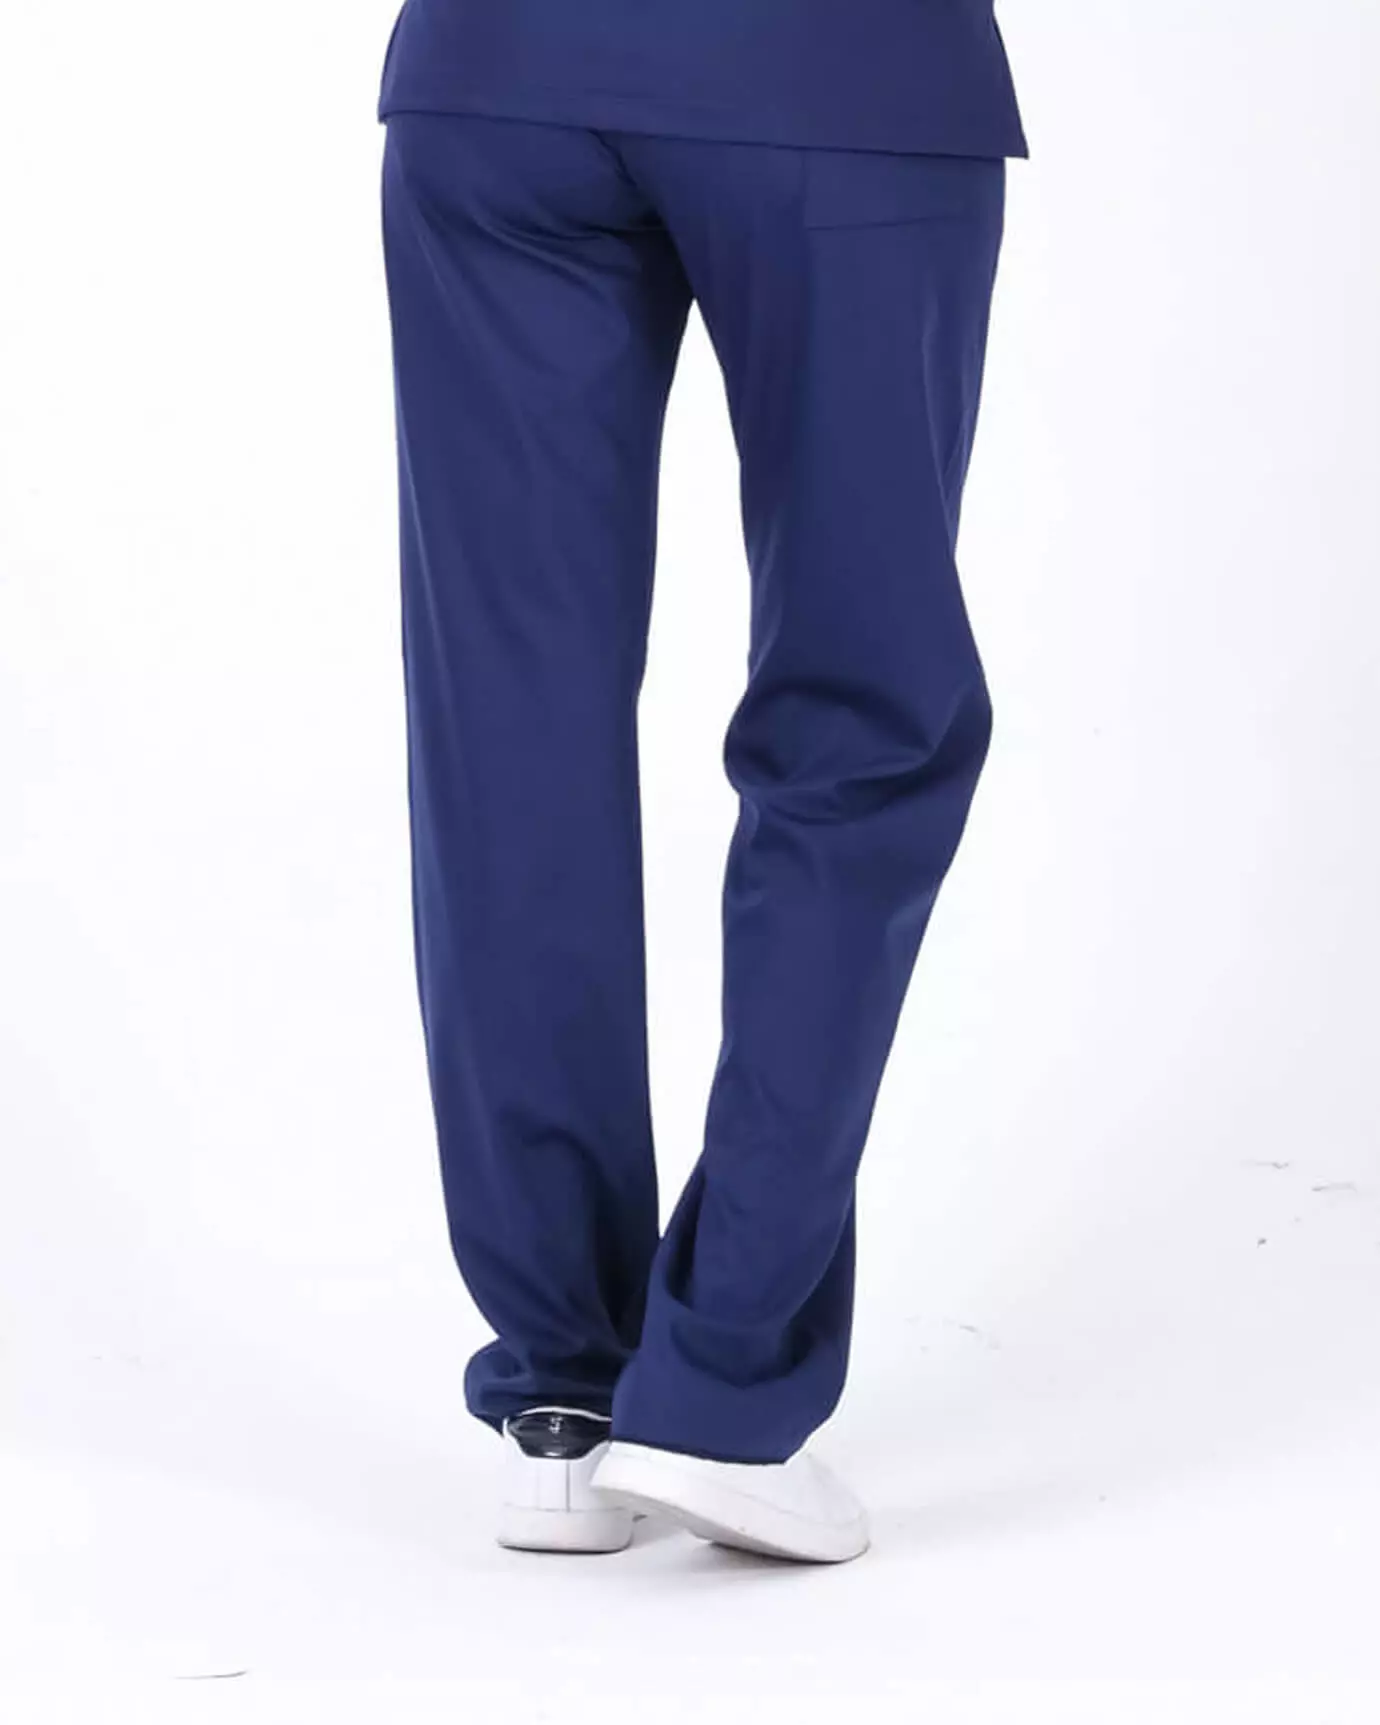 Kadın Hemşire Forması Premium İndigo Mavisi Pantolon